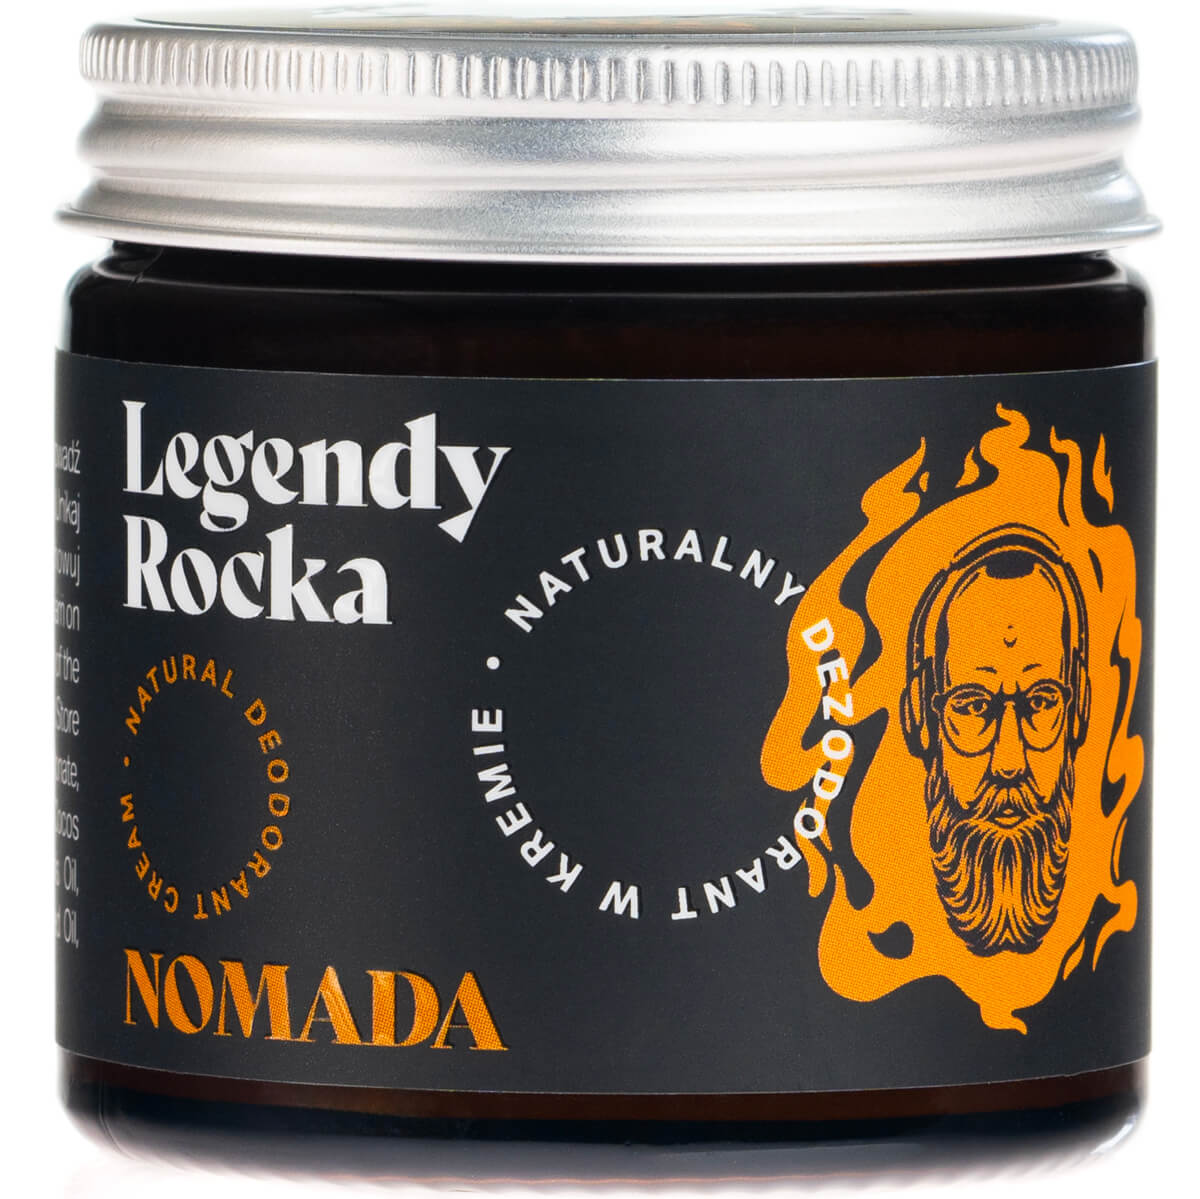 RareCraft Legendy Rocka Nomada, Deodorant Cream